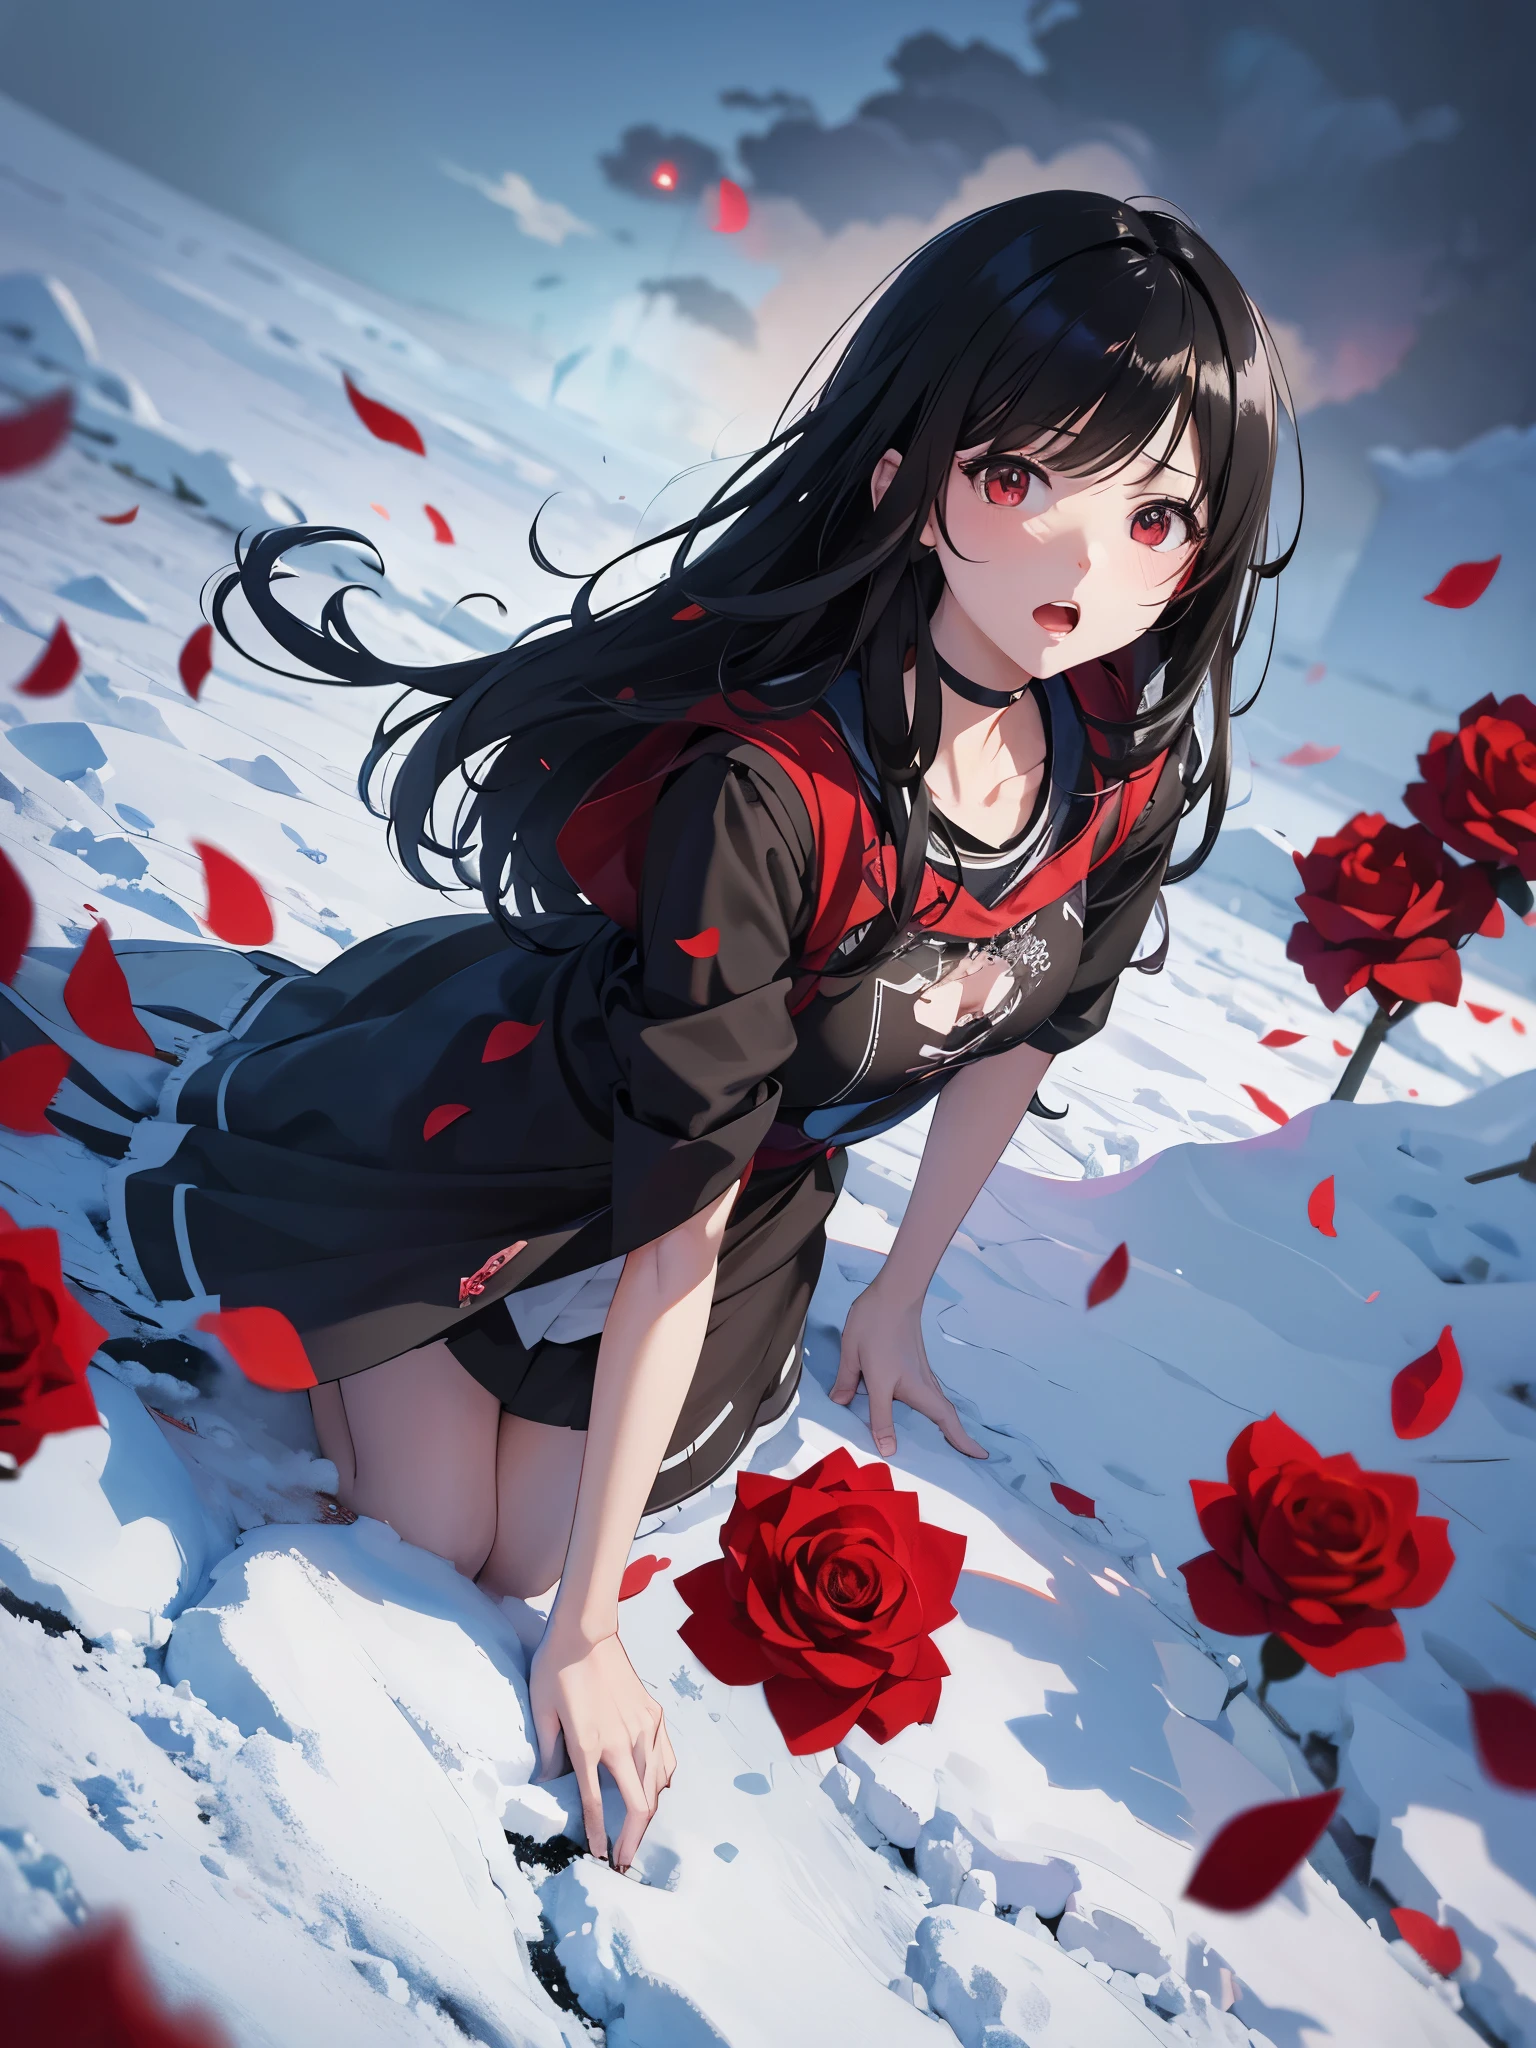 Anime-Illustration、Hohe Auflösung、15 Jahre alt、schwarzes glattes Haar、Pulverschnee、auf dem Boden　Überall blühen rote Rosen、Gruselige Wolken